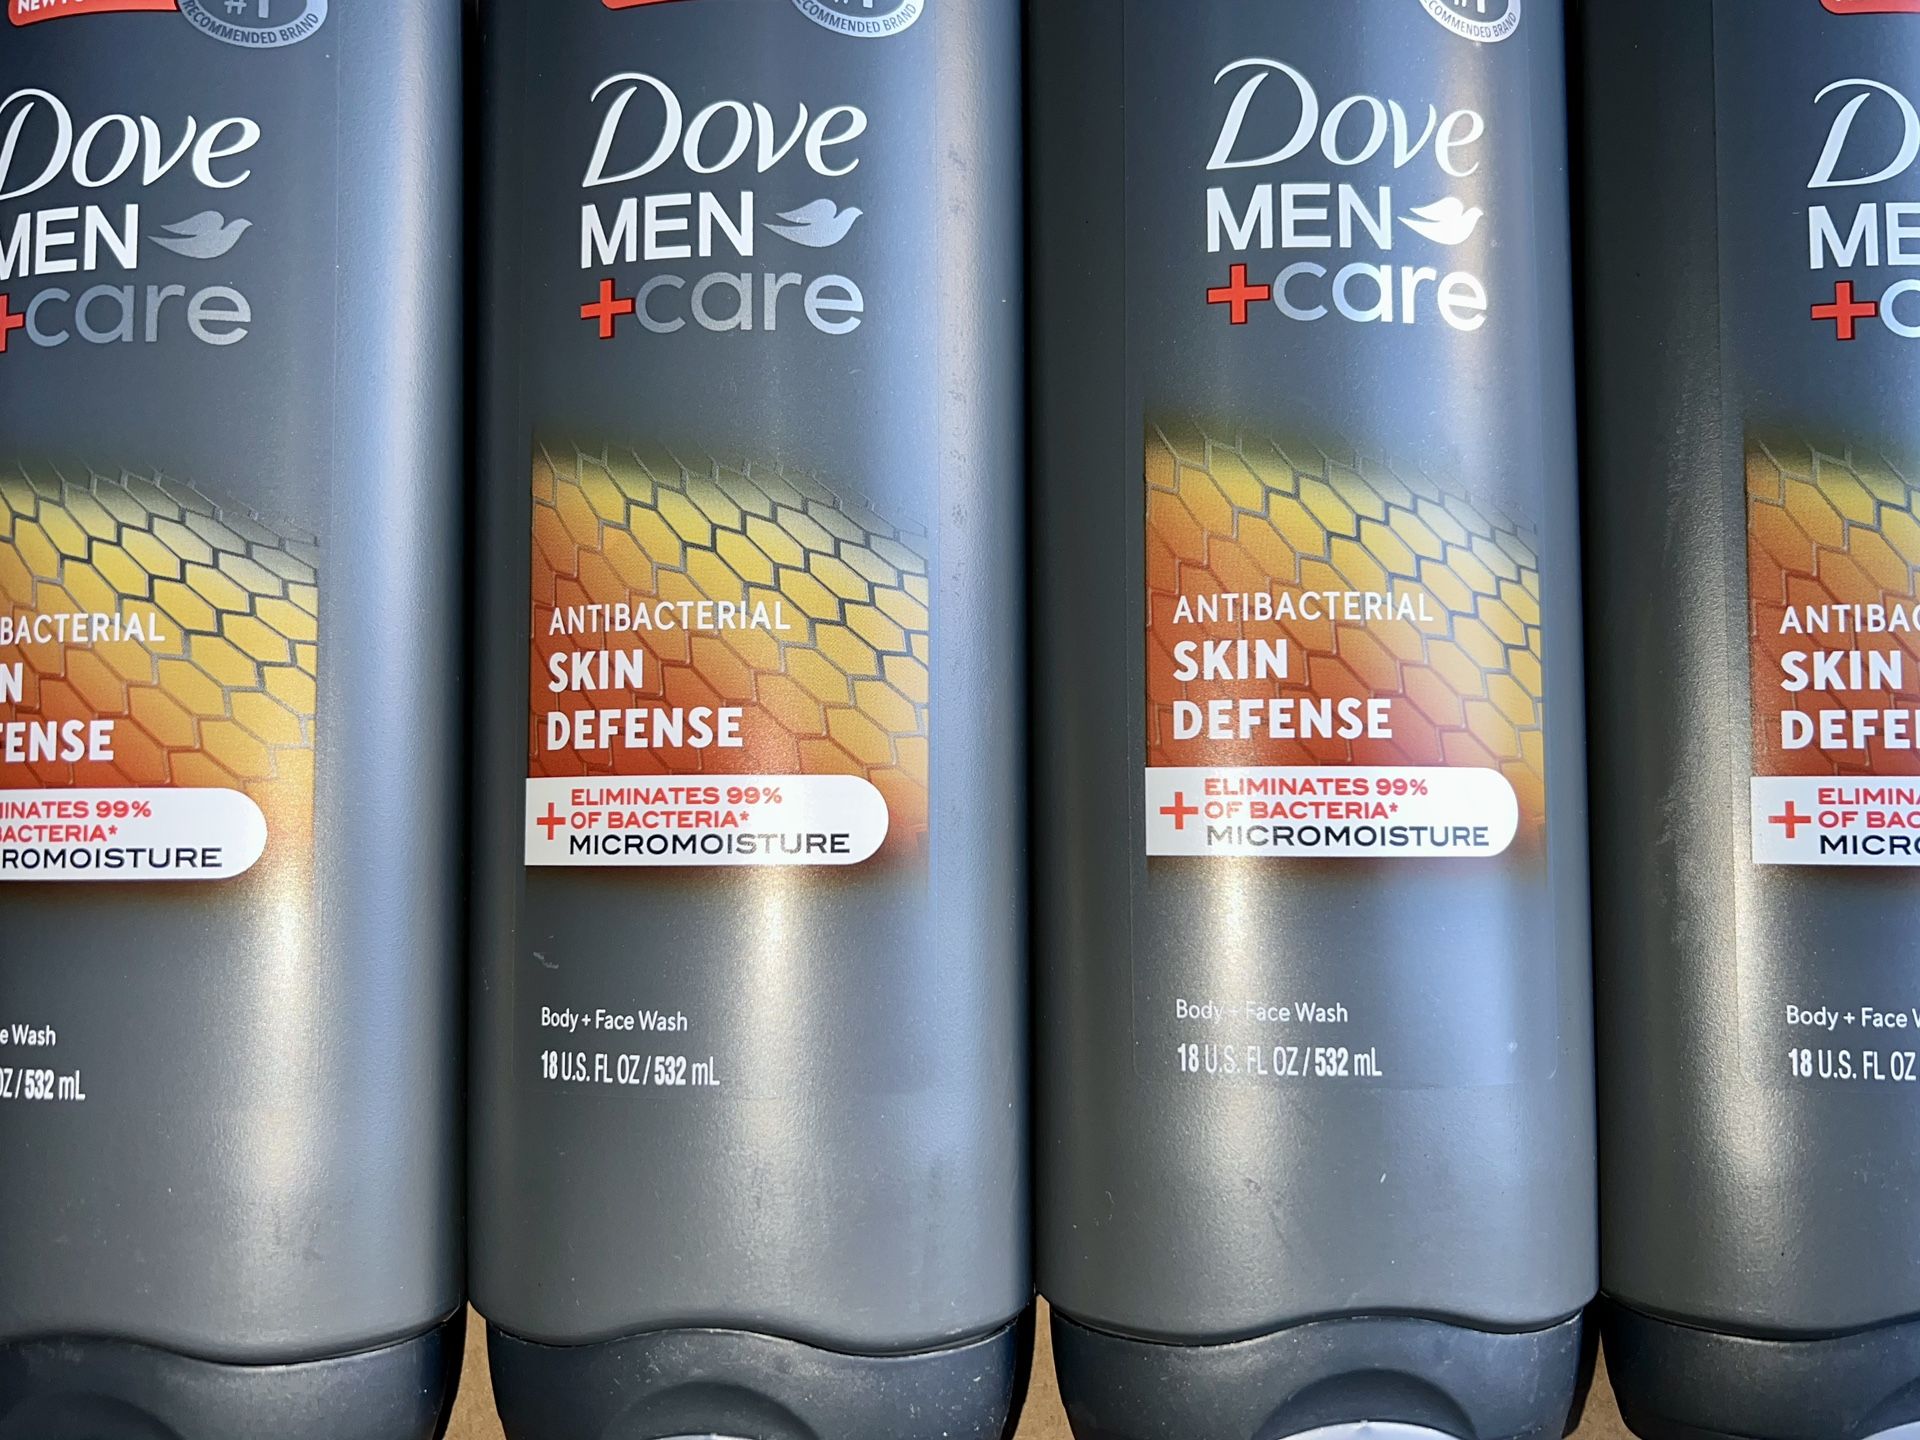 Dove Men+Care Skin Defense Antibacterial Body Wash Soap - 18 fl oz